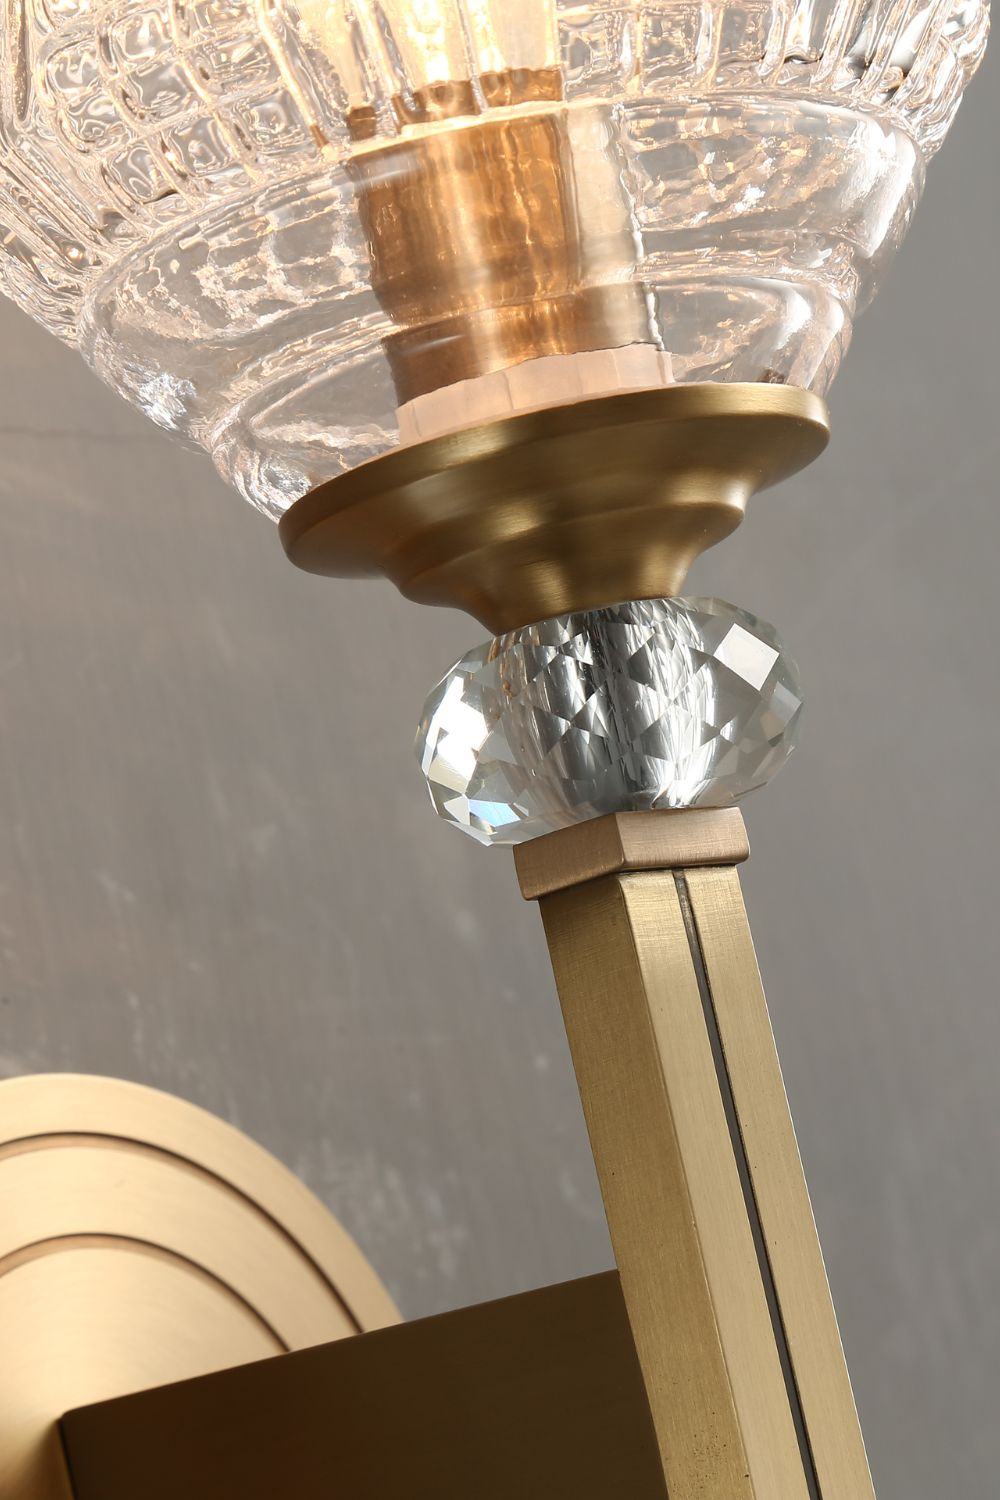 Orrefors Brass Wall Lamp - SamuLighting